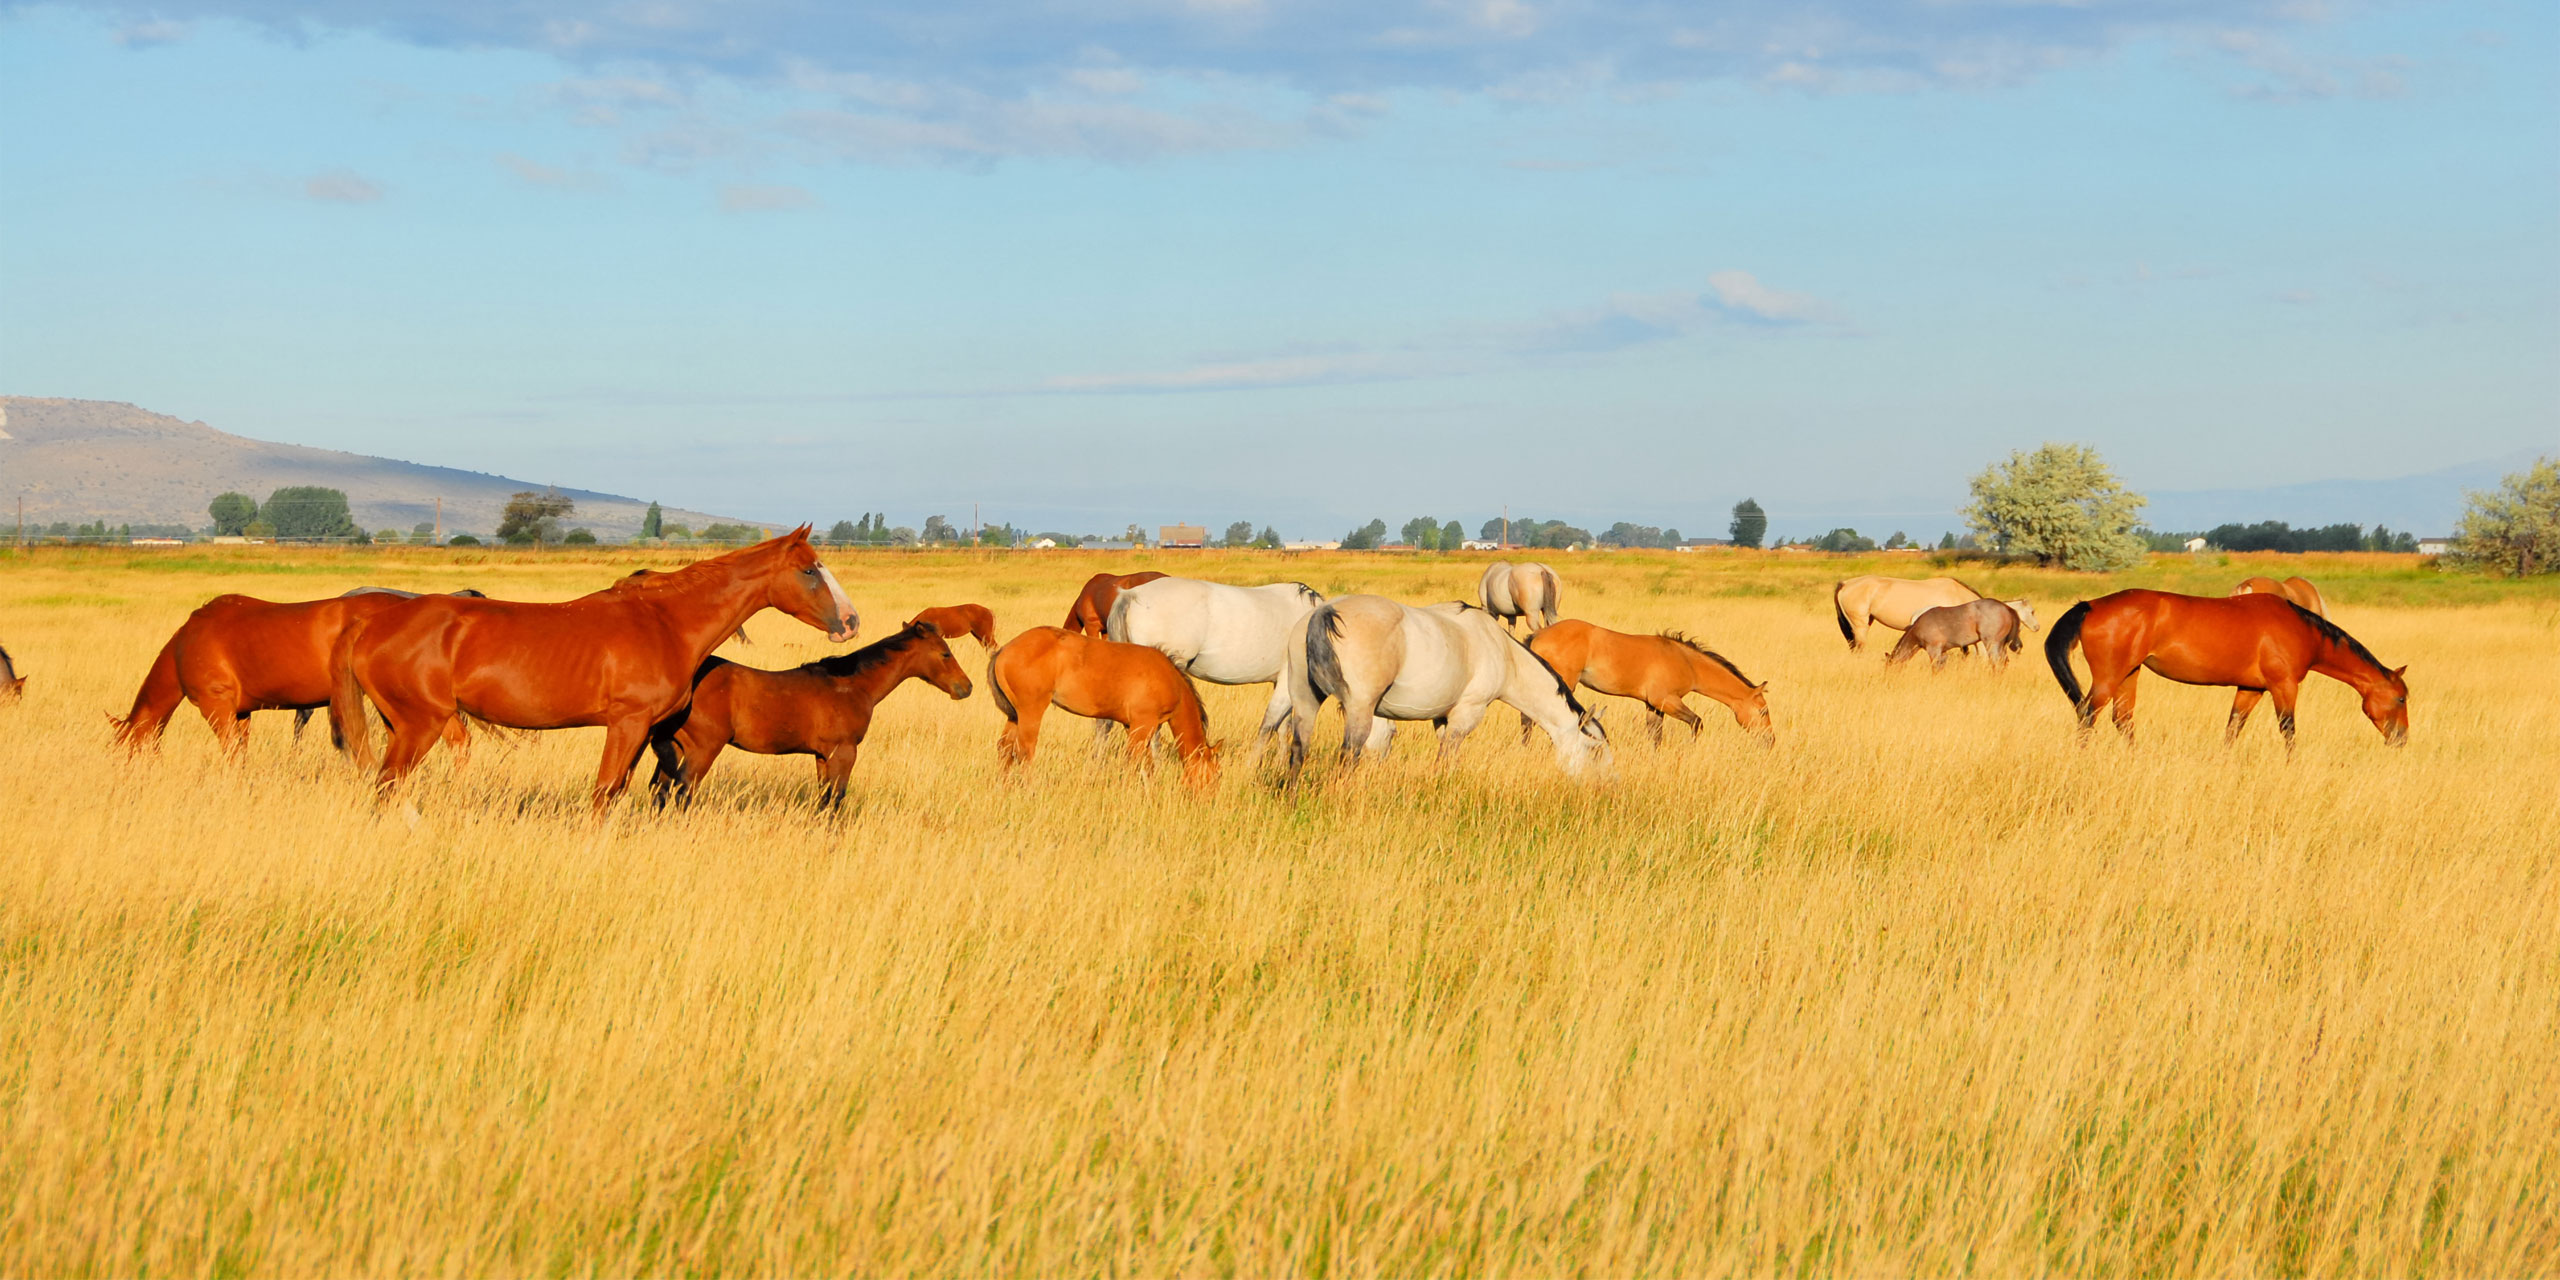 Dude Ranch; Courtesy of Kirk Geisler/Shutterstock.com